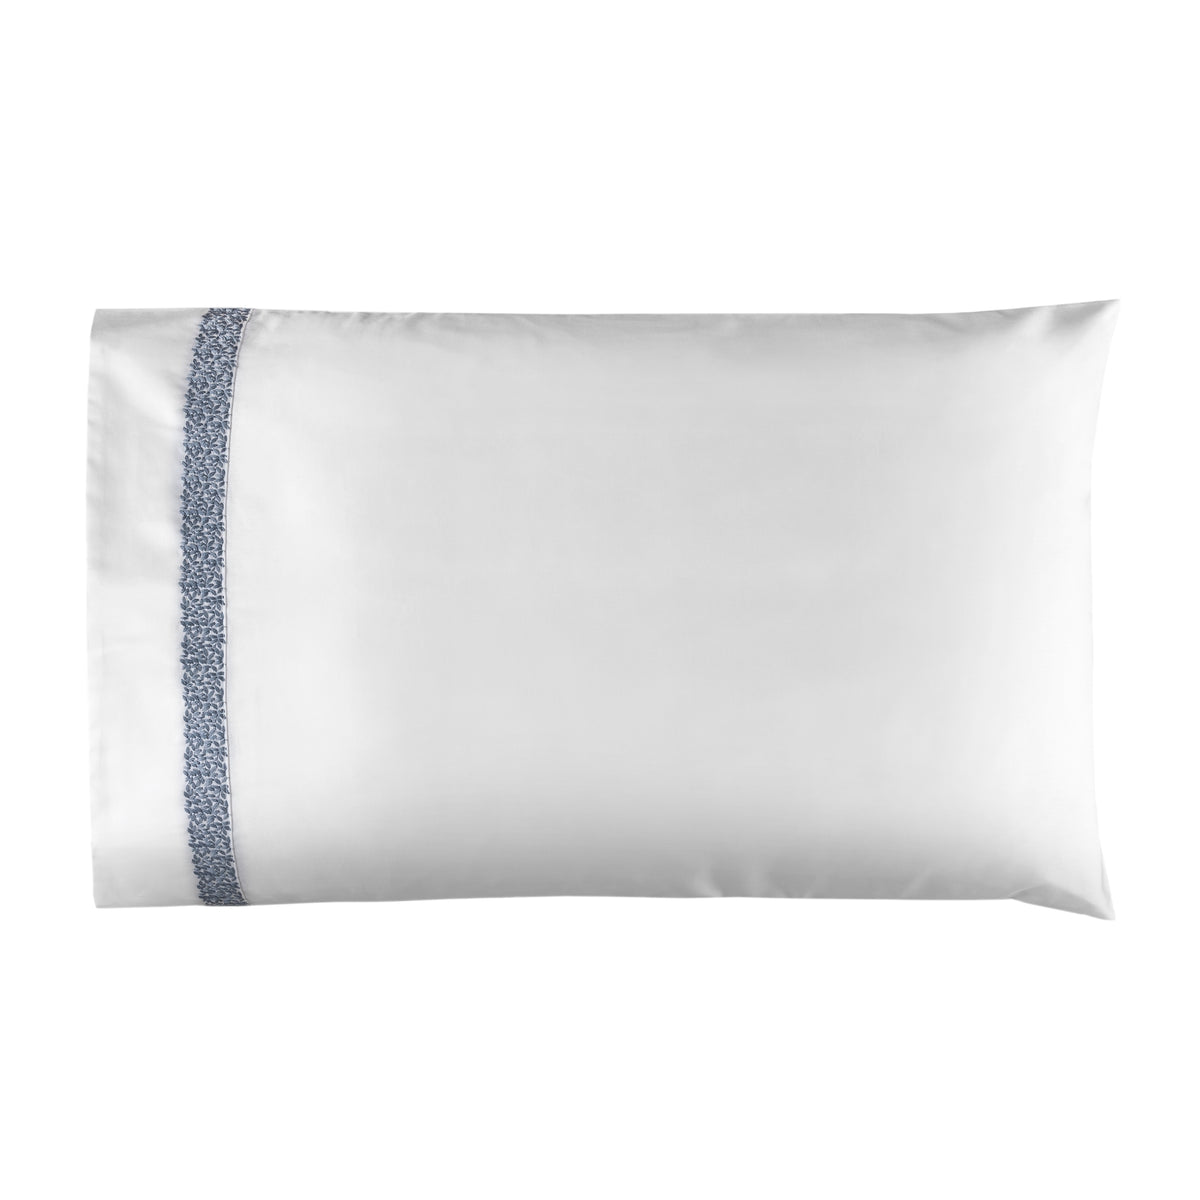 Silo of BOVI Malone Bedding Pillowcase White Blue Colored